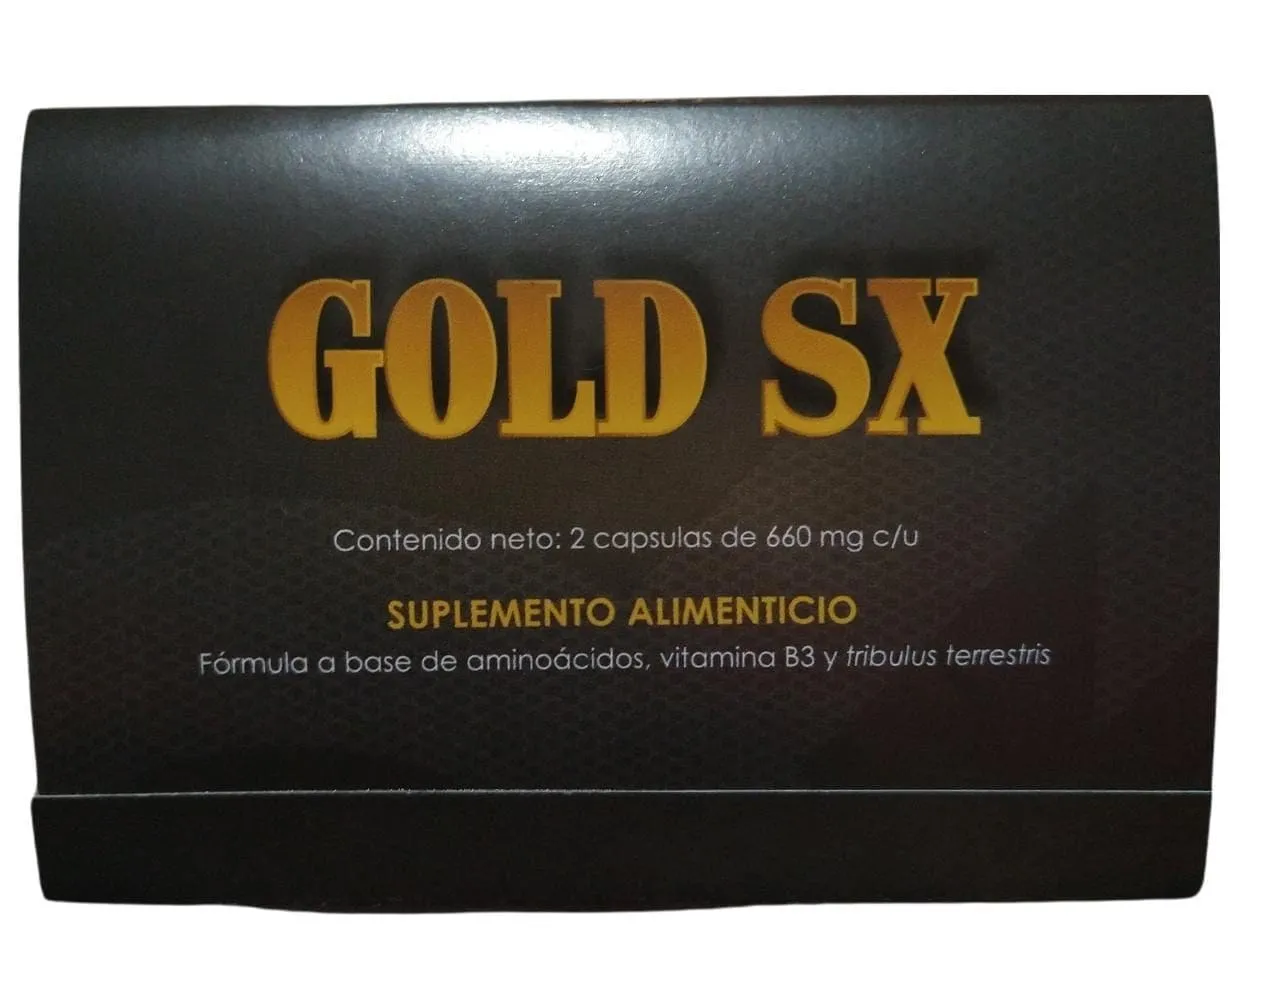 GOLD SX SUPLEMENTO ALIMENTICIO